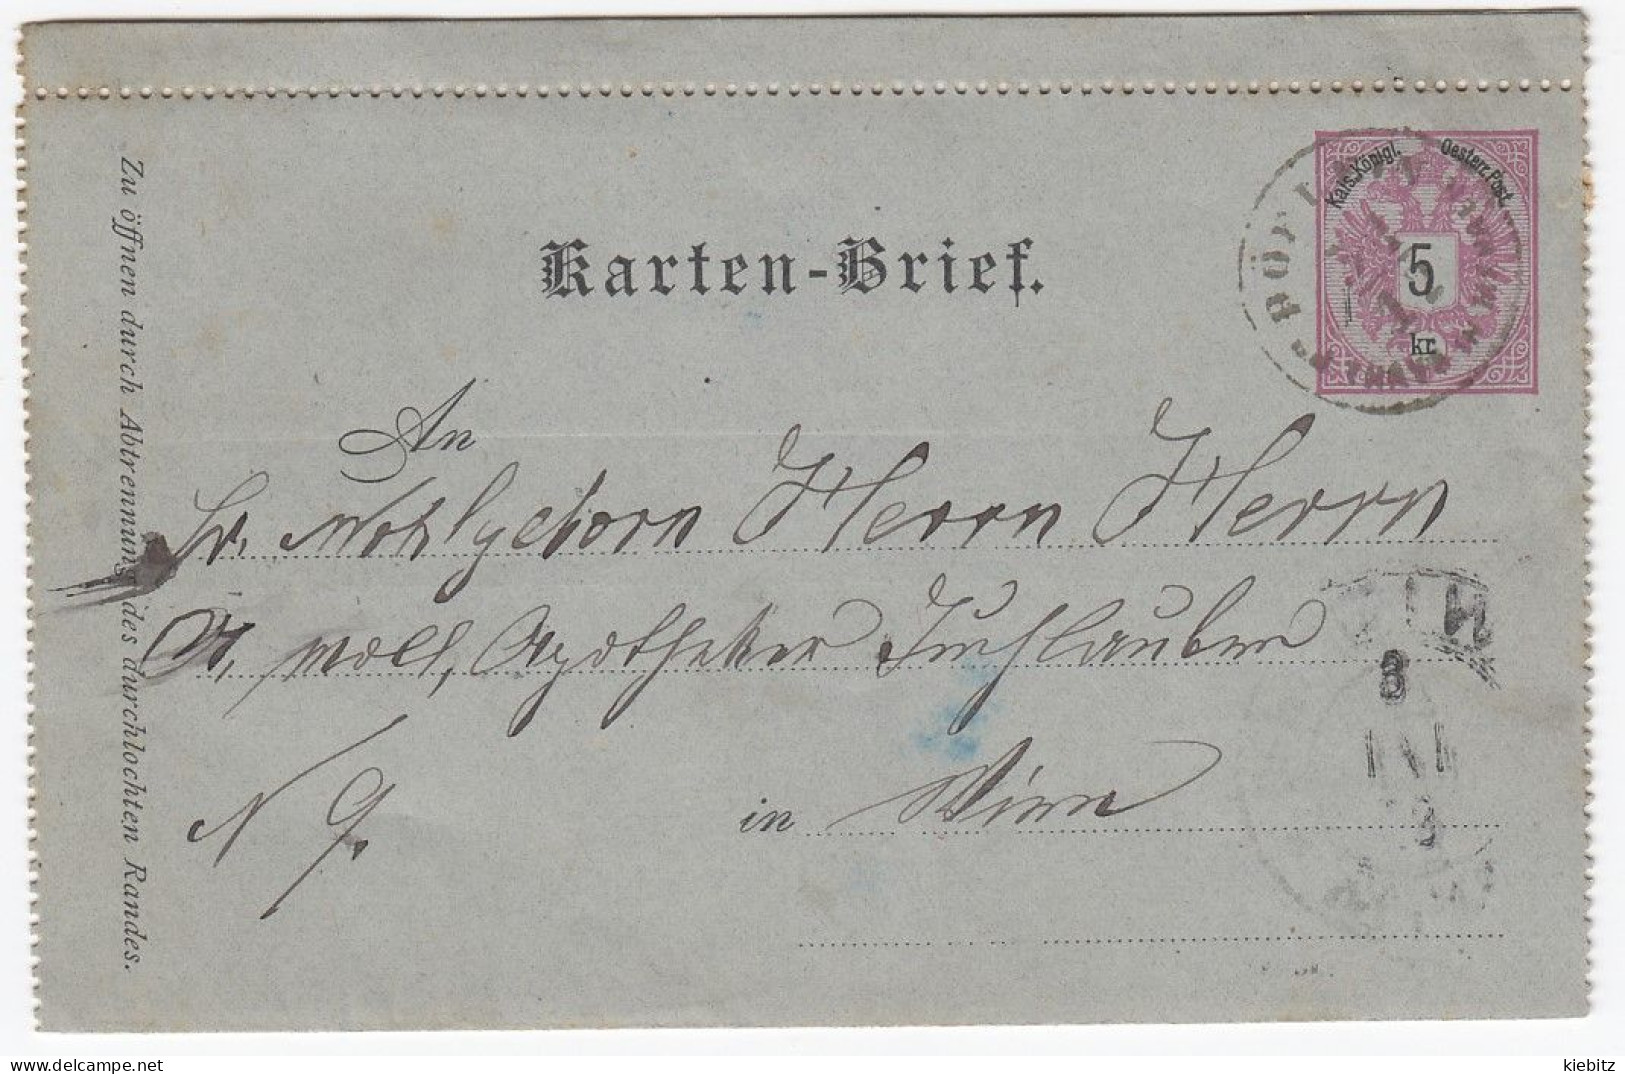 ÖSTERREICH 1886 - Kartenbrief K 8 Deutsch - Cartes-lettres